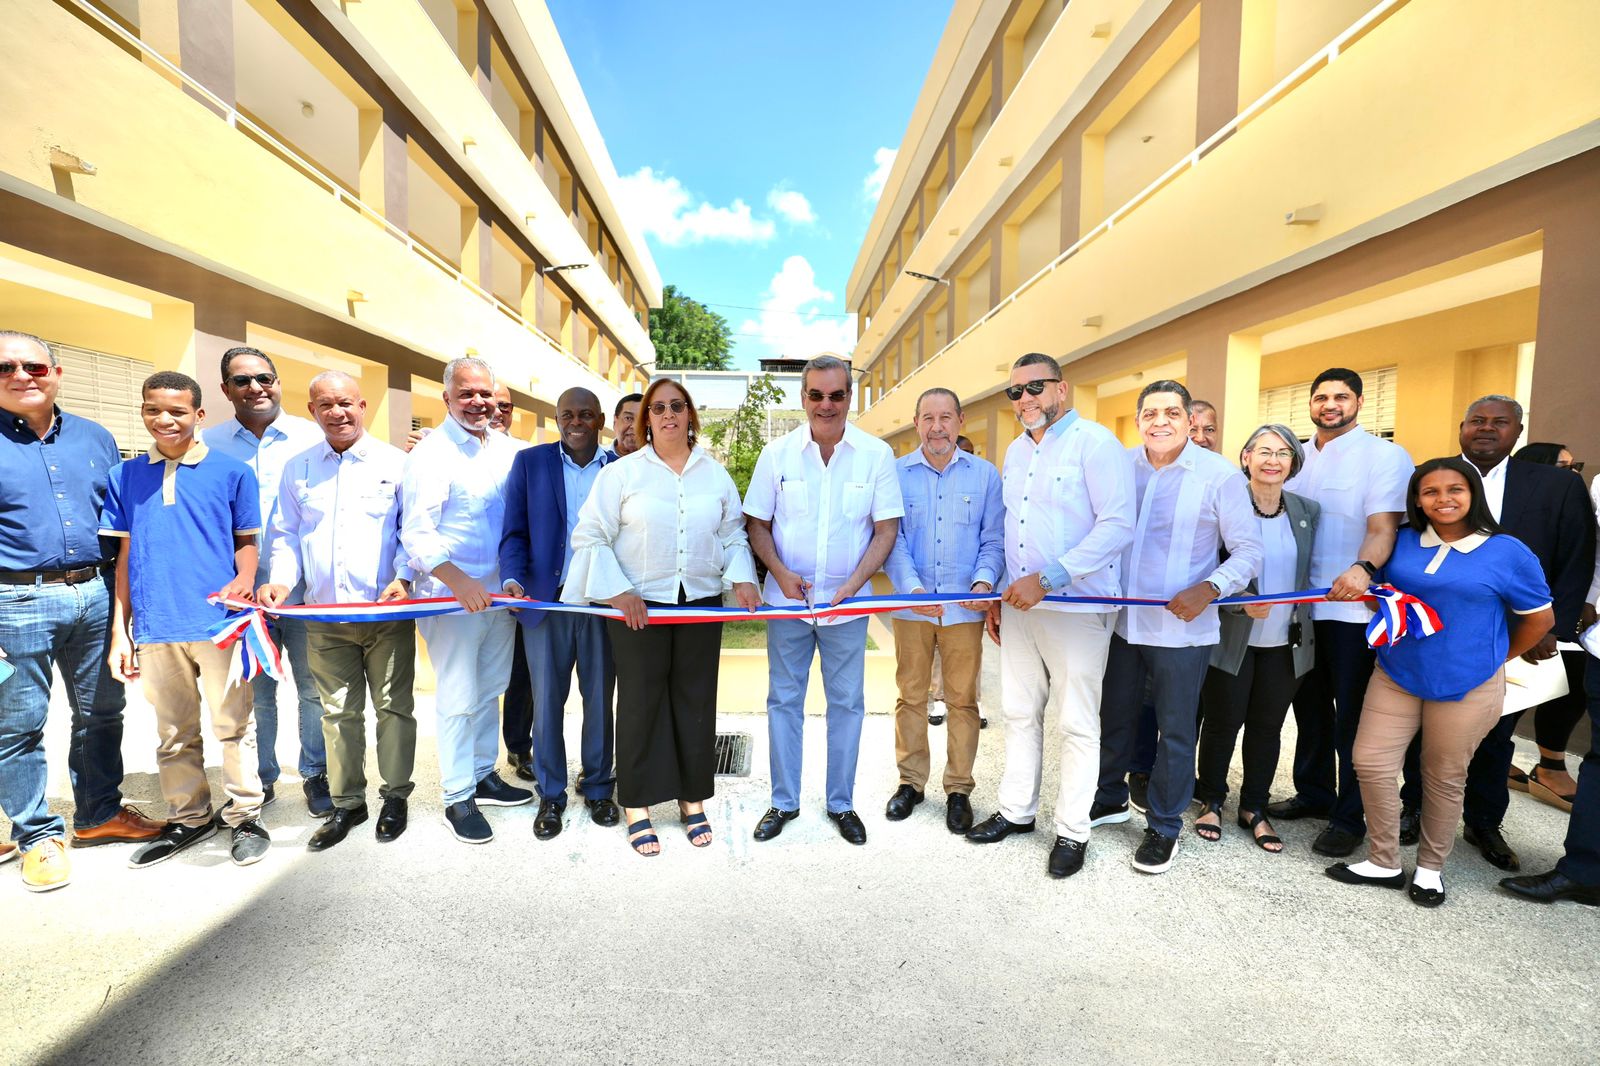 REPÚBLICA DOMINICANA: Presidente Abinader inaugura liceo secundario en Villa Altagracia con una inversión de RD 127.08 millones